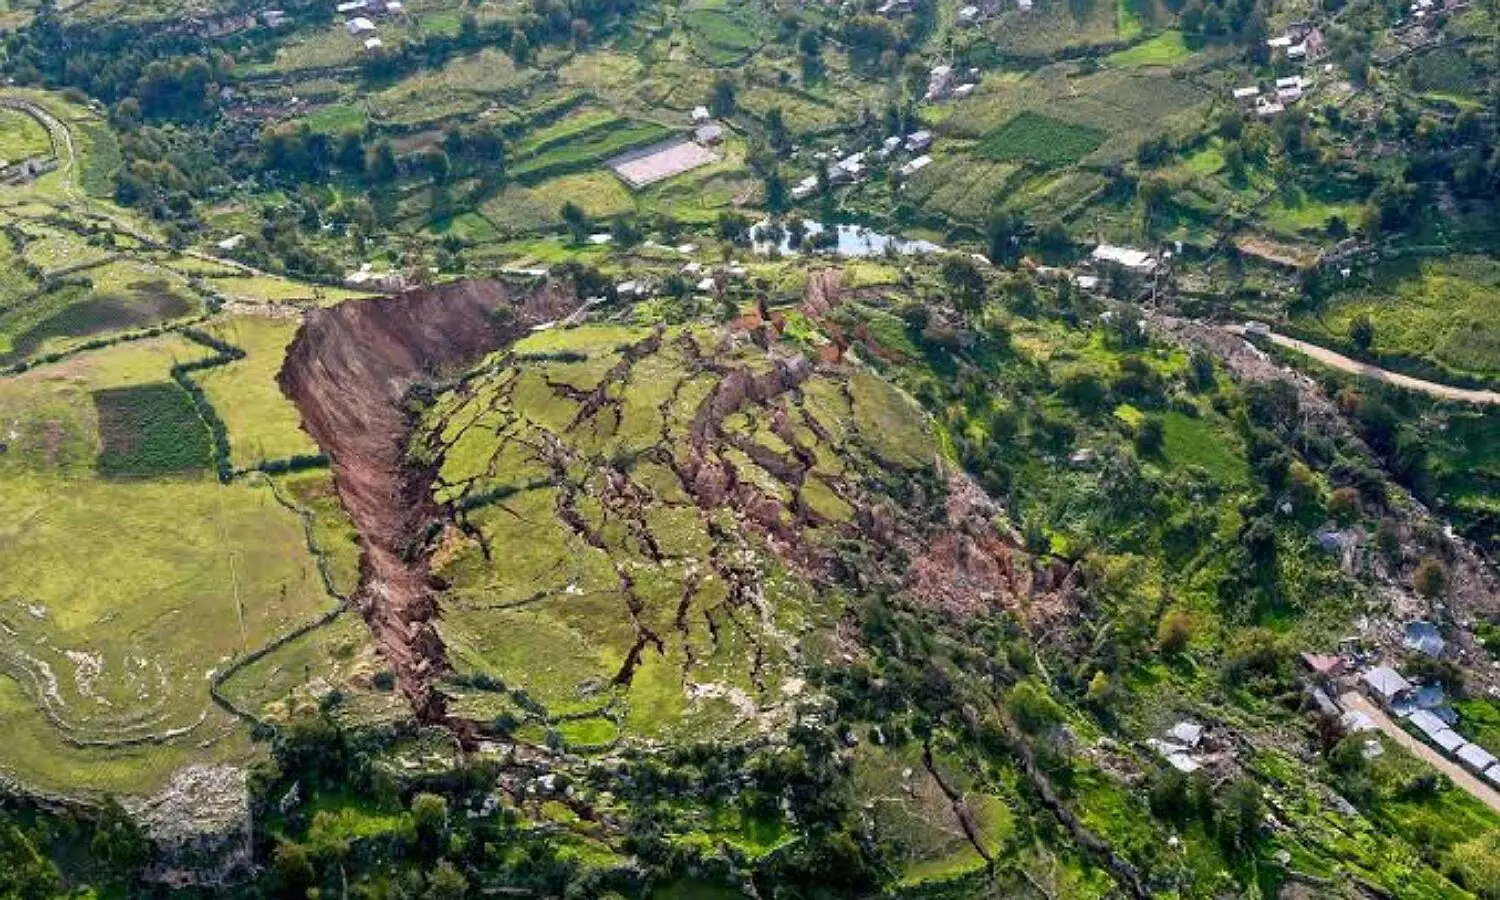 Landslides Natural or Artificial Disaster